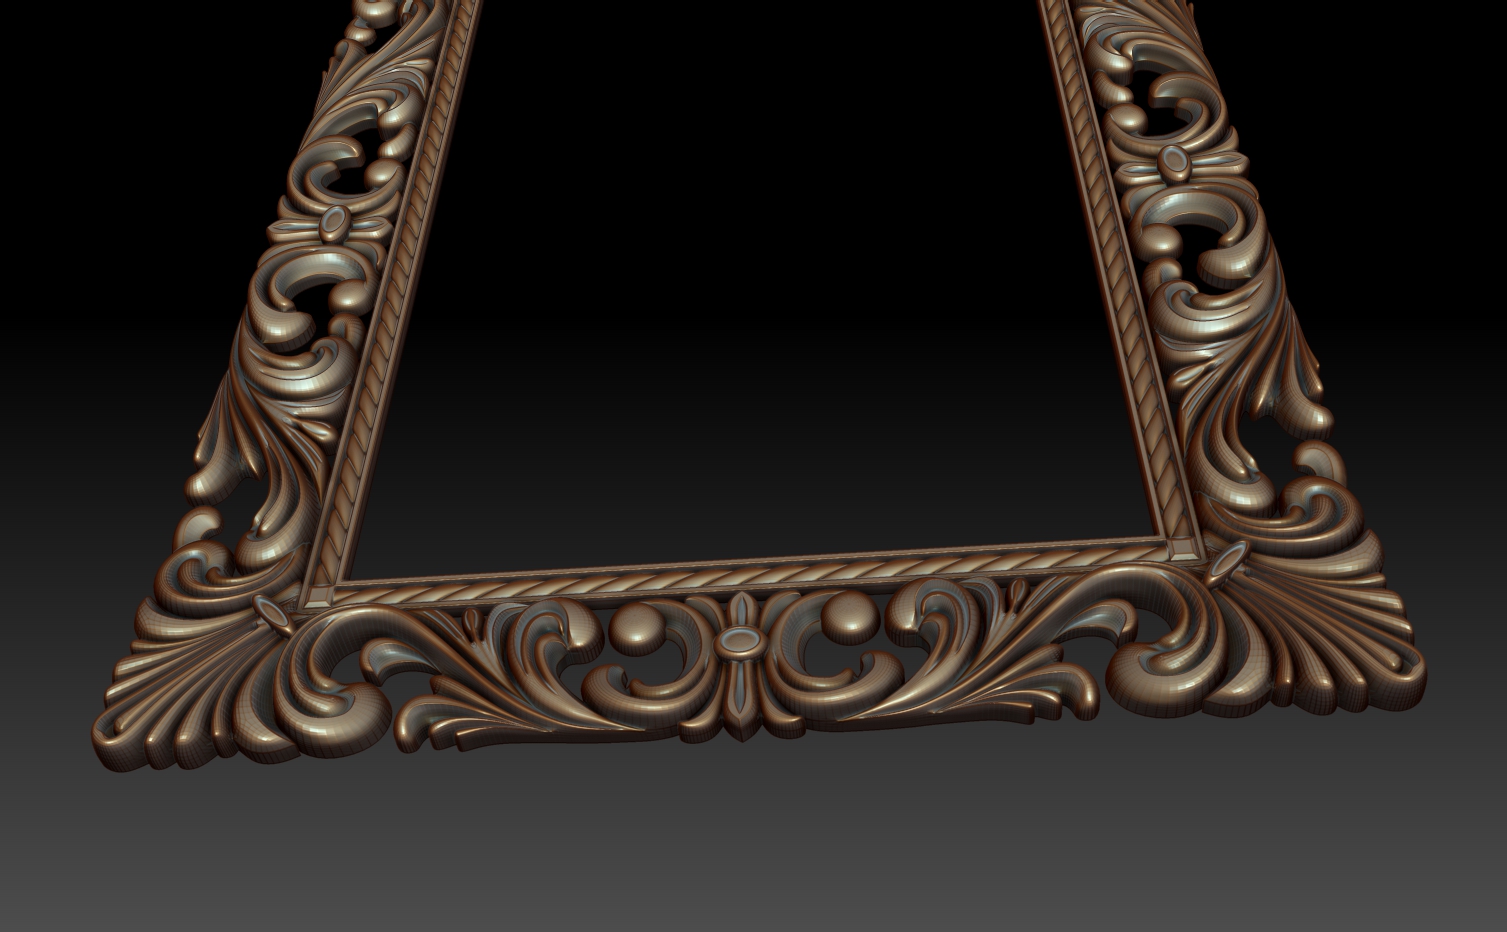 3d model of decorative frame